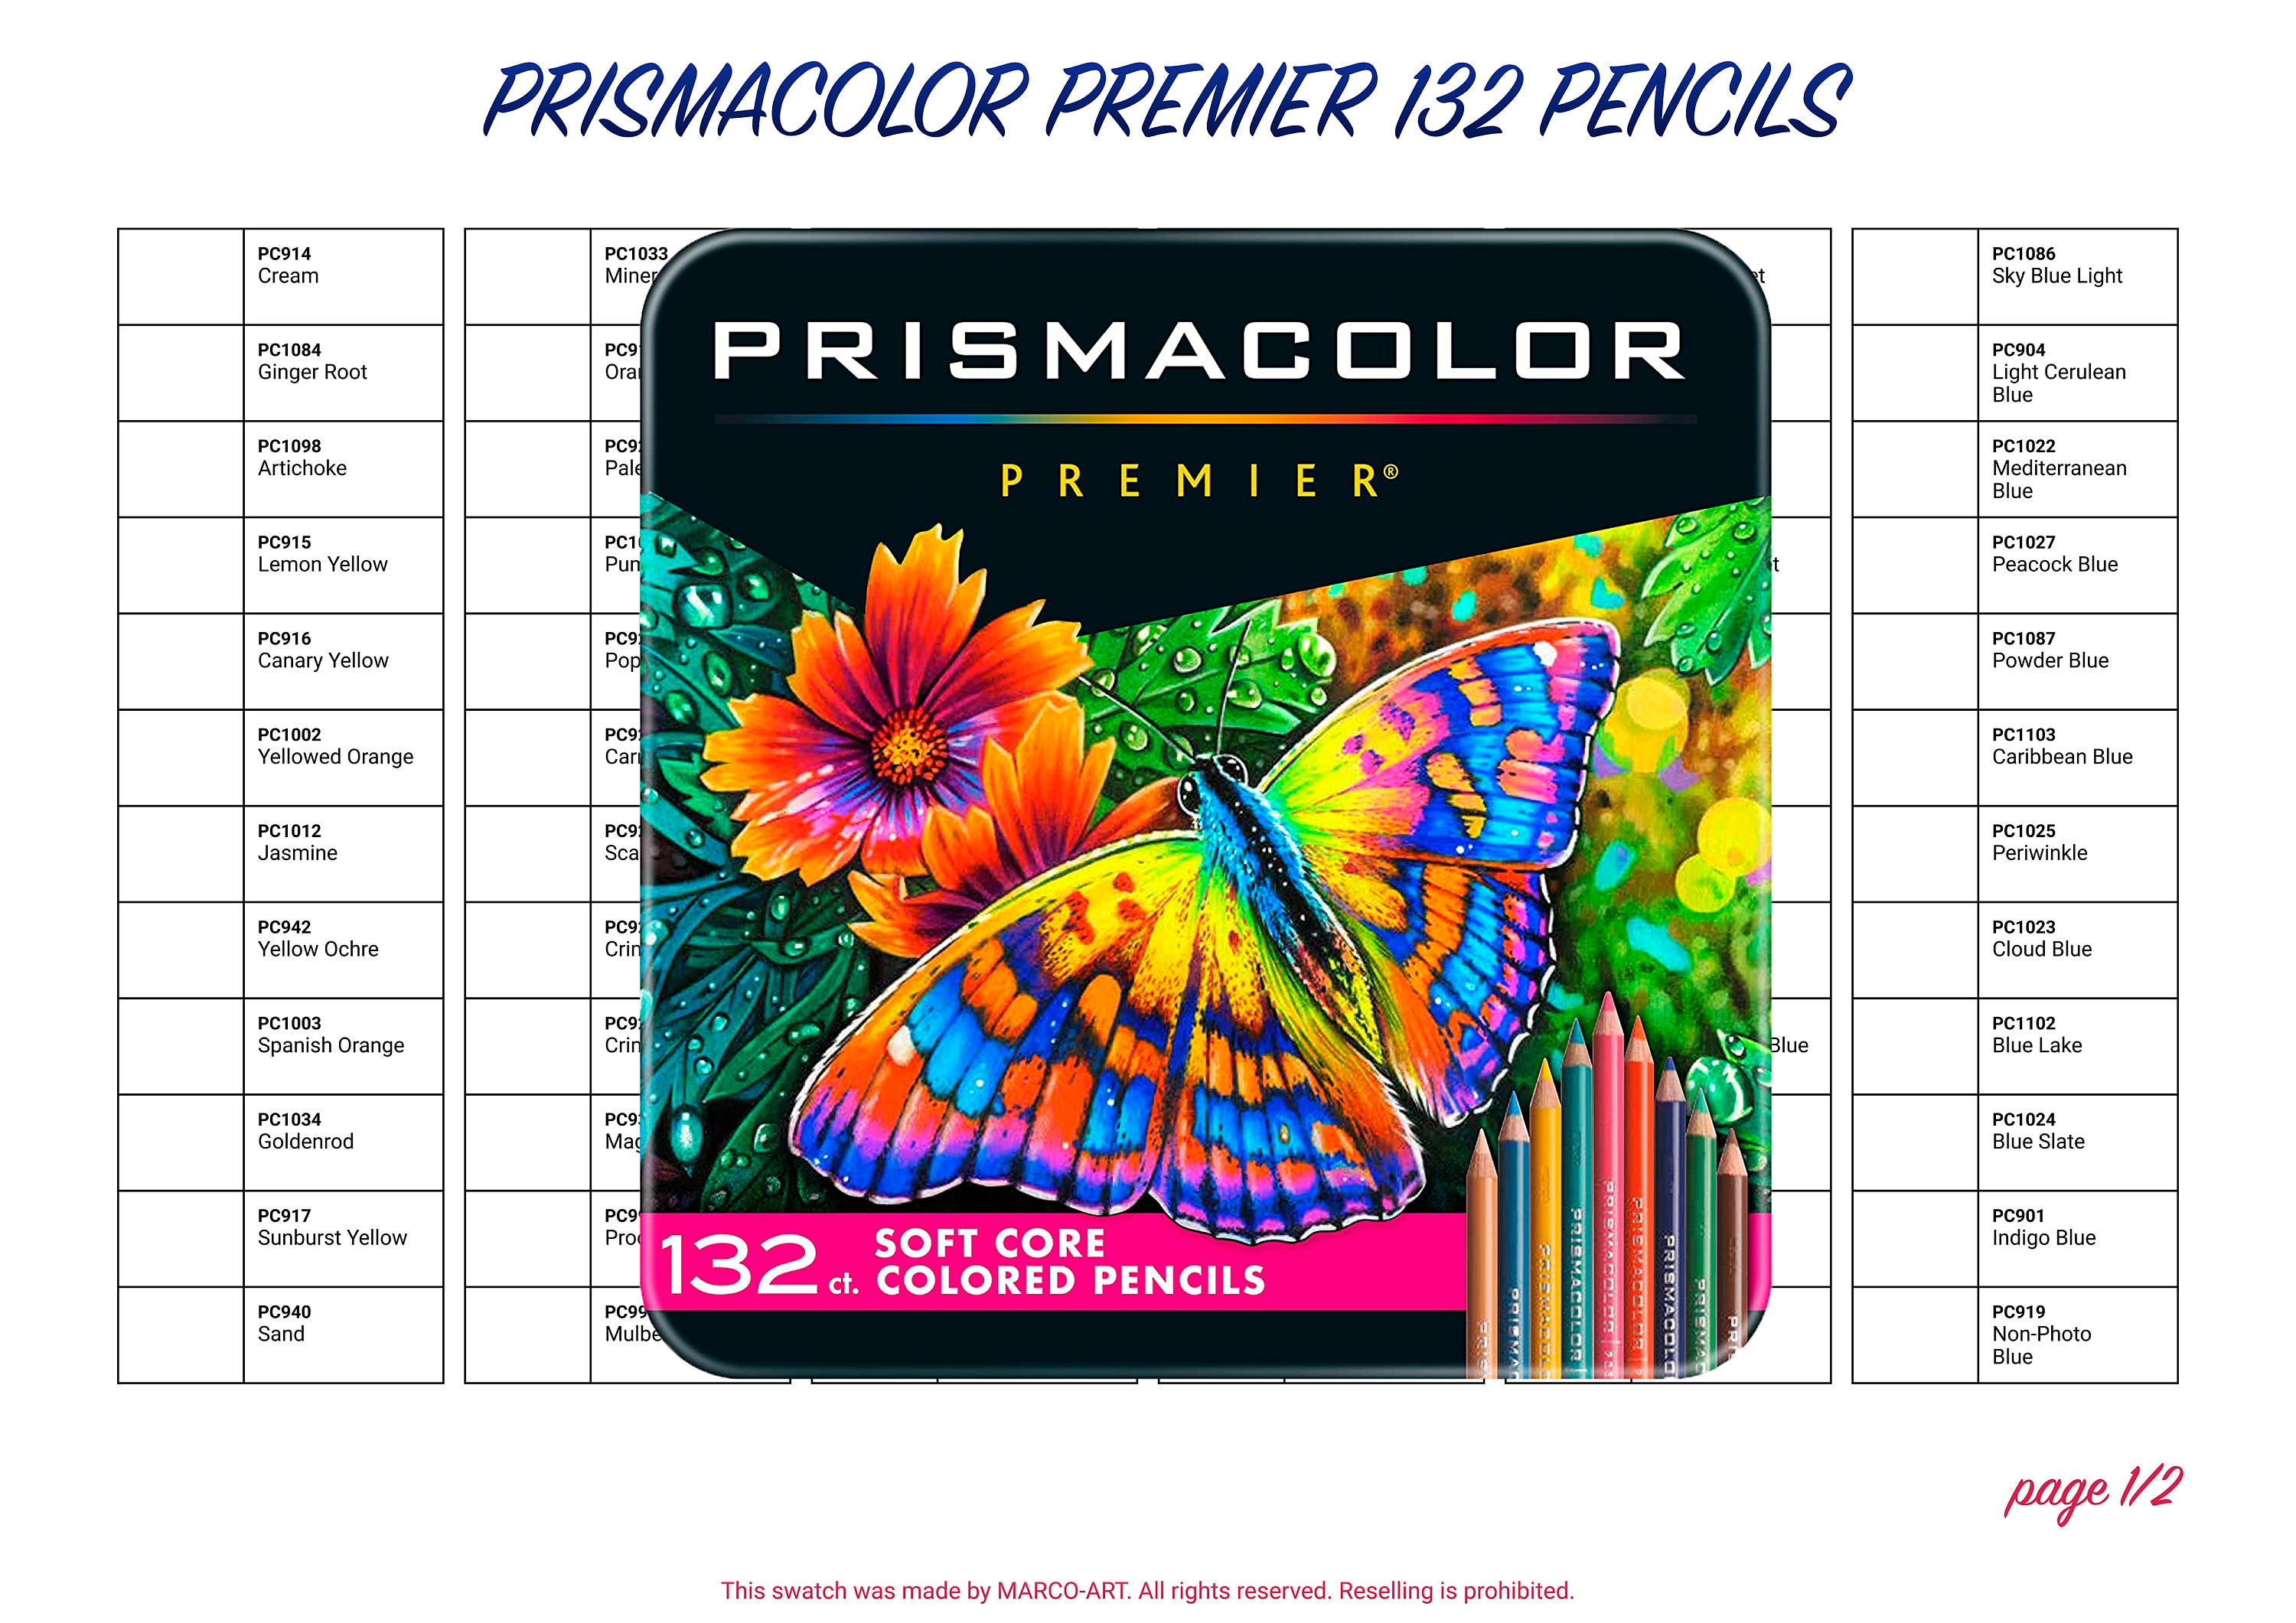 Prismacolor Premier Verithin Hard Lead Set of 12 White Pencils Drawing,  Blending, Shading & Rendering, Prismacolor Arts Crafts 